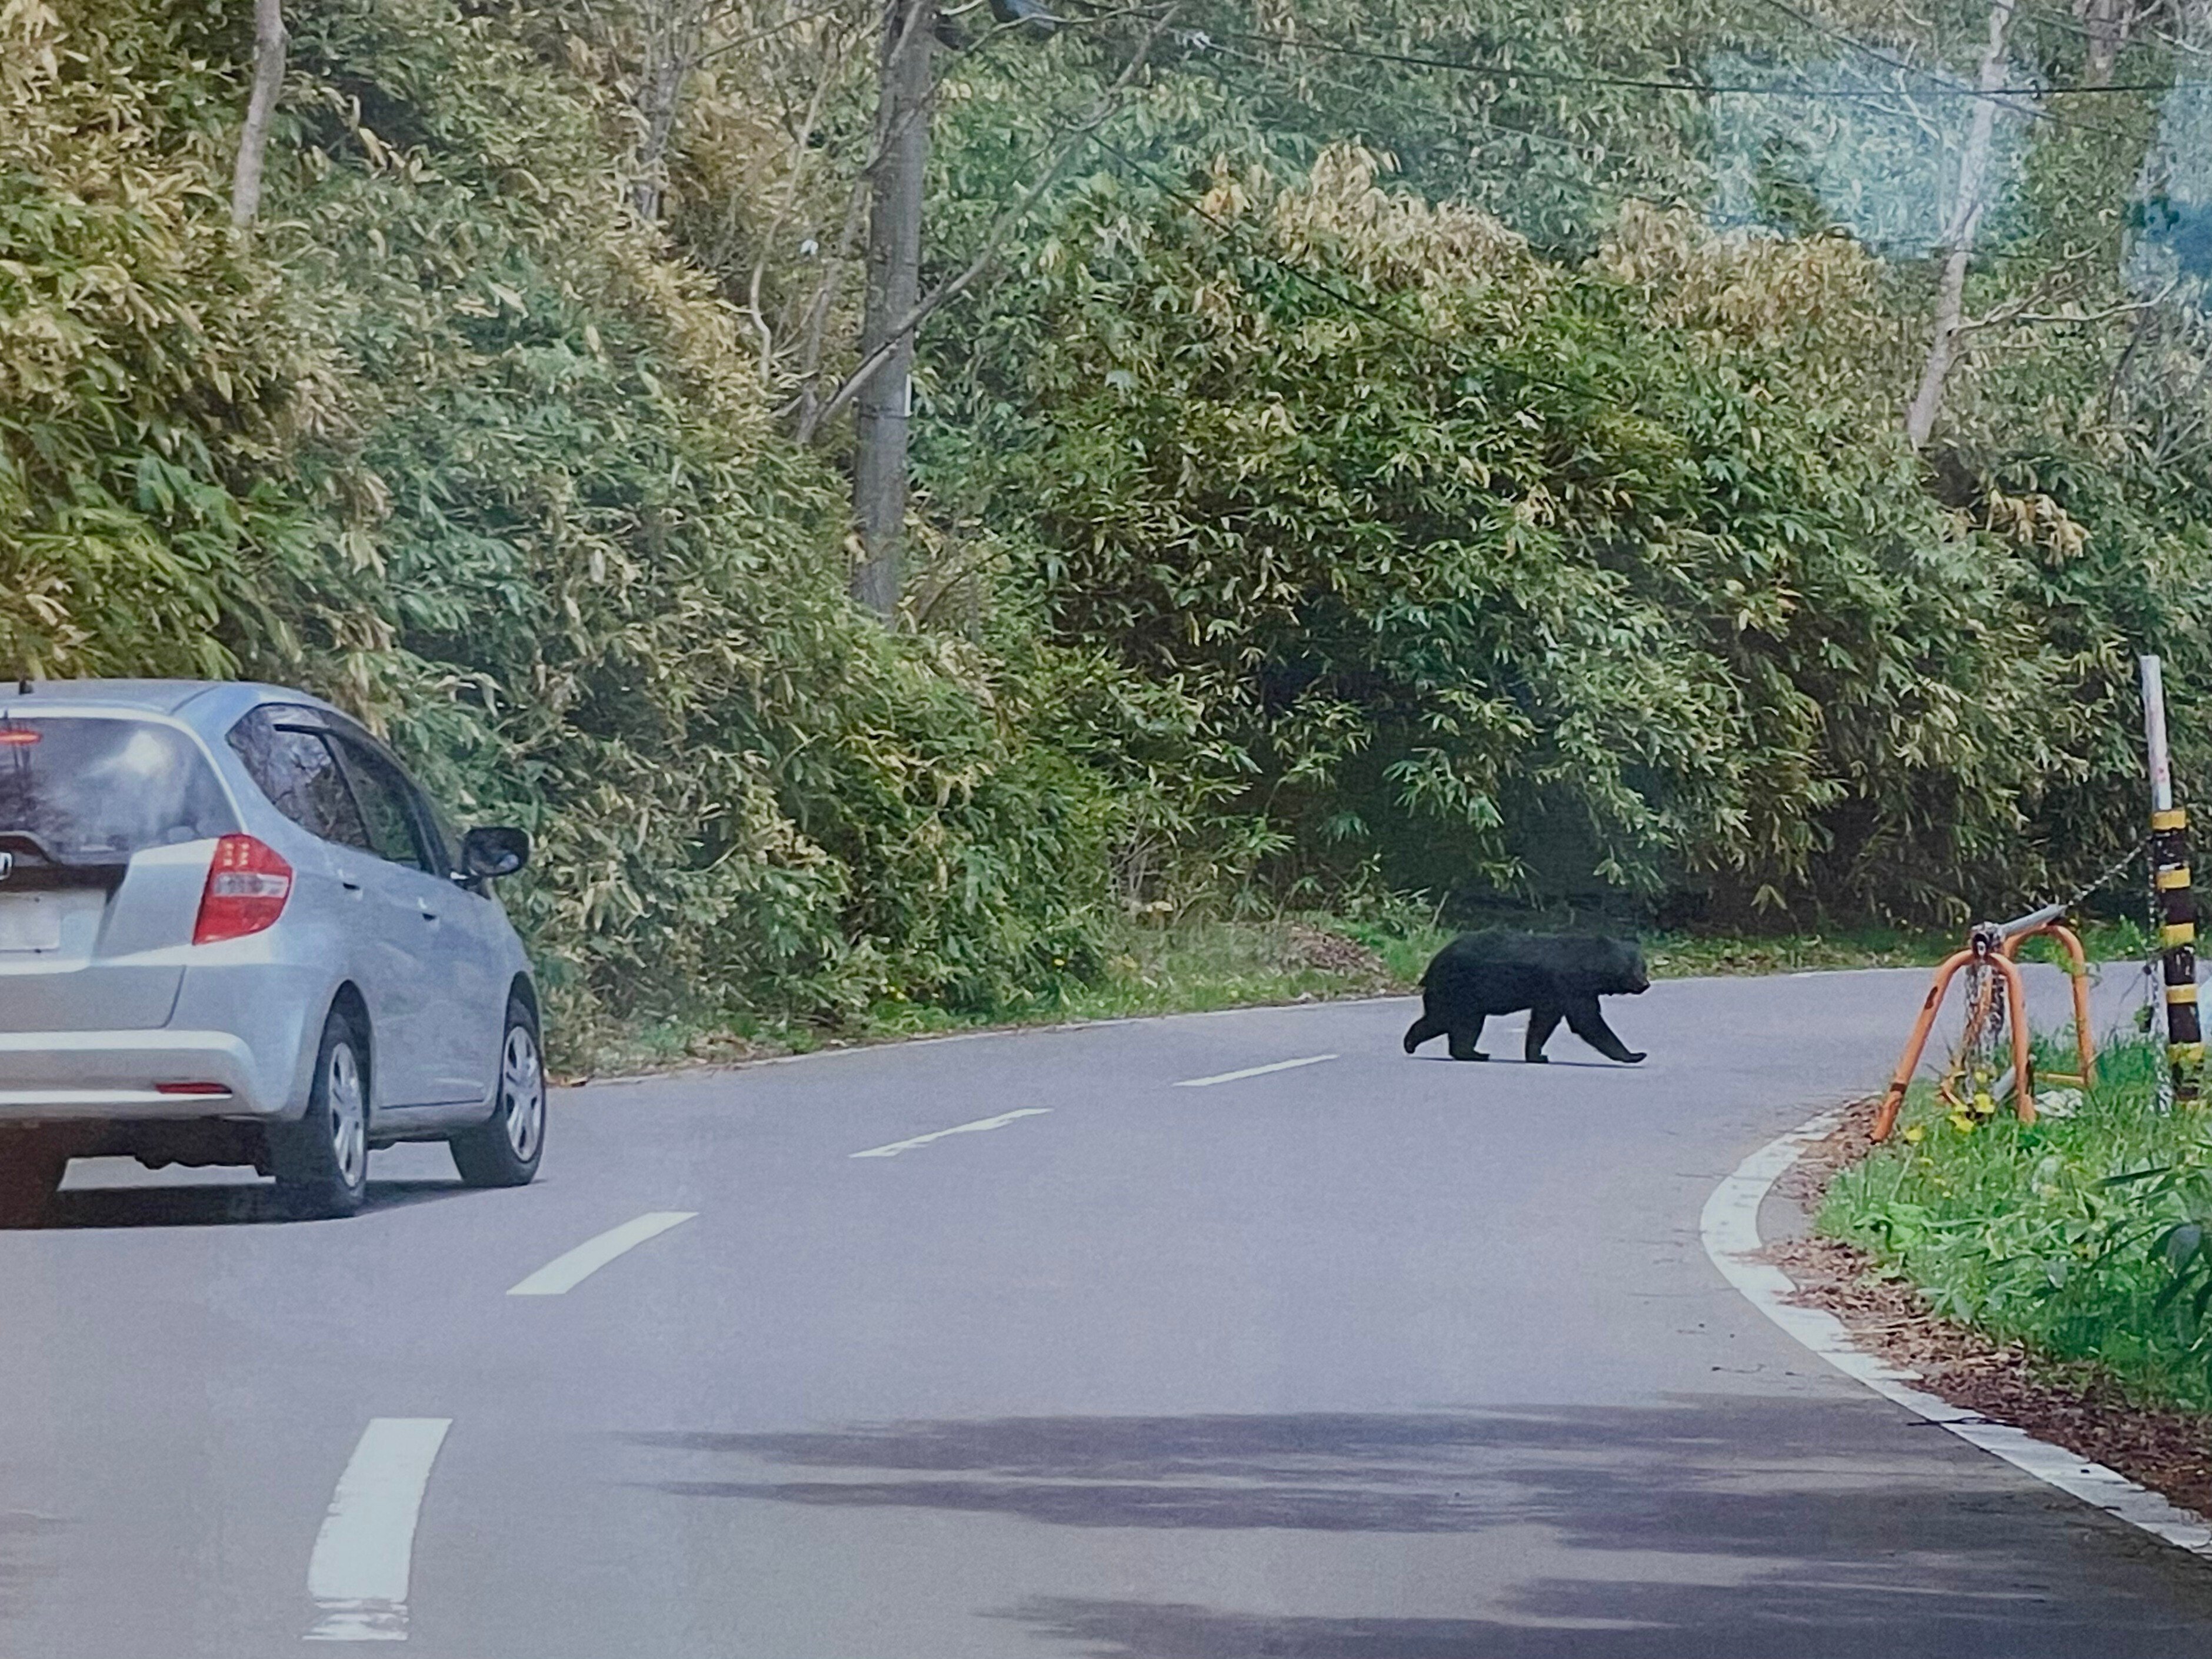 嬬恋村には熊がいます。】熊と人間が共存して行くために私たちが